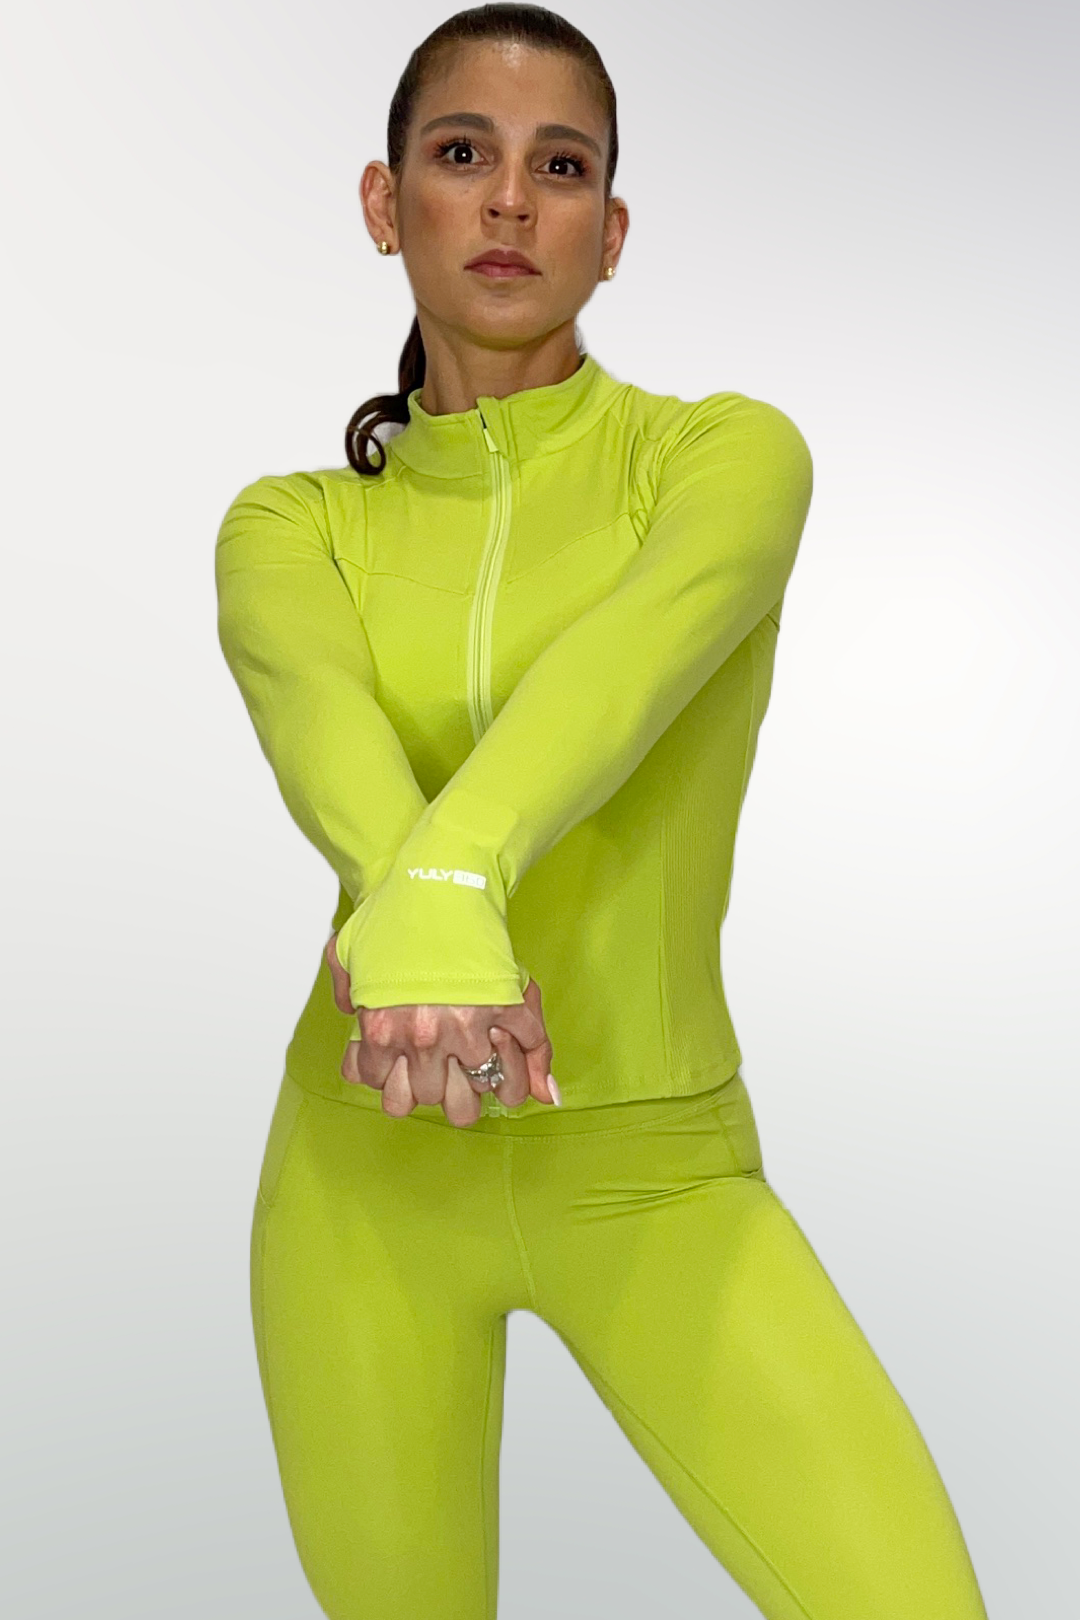 Zen Jacket Lime - FINAL SALE